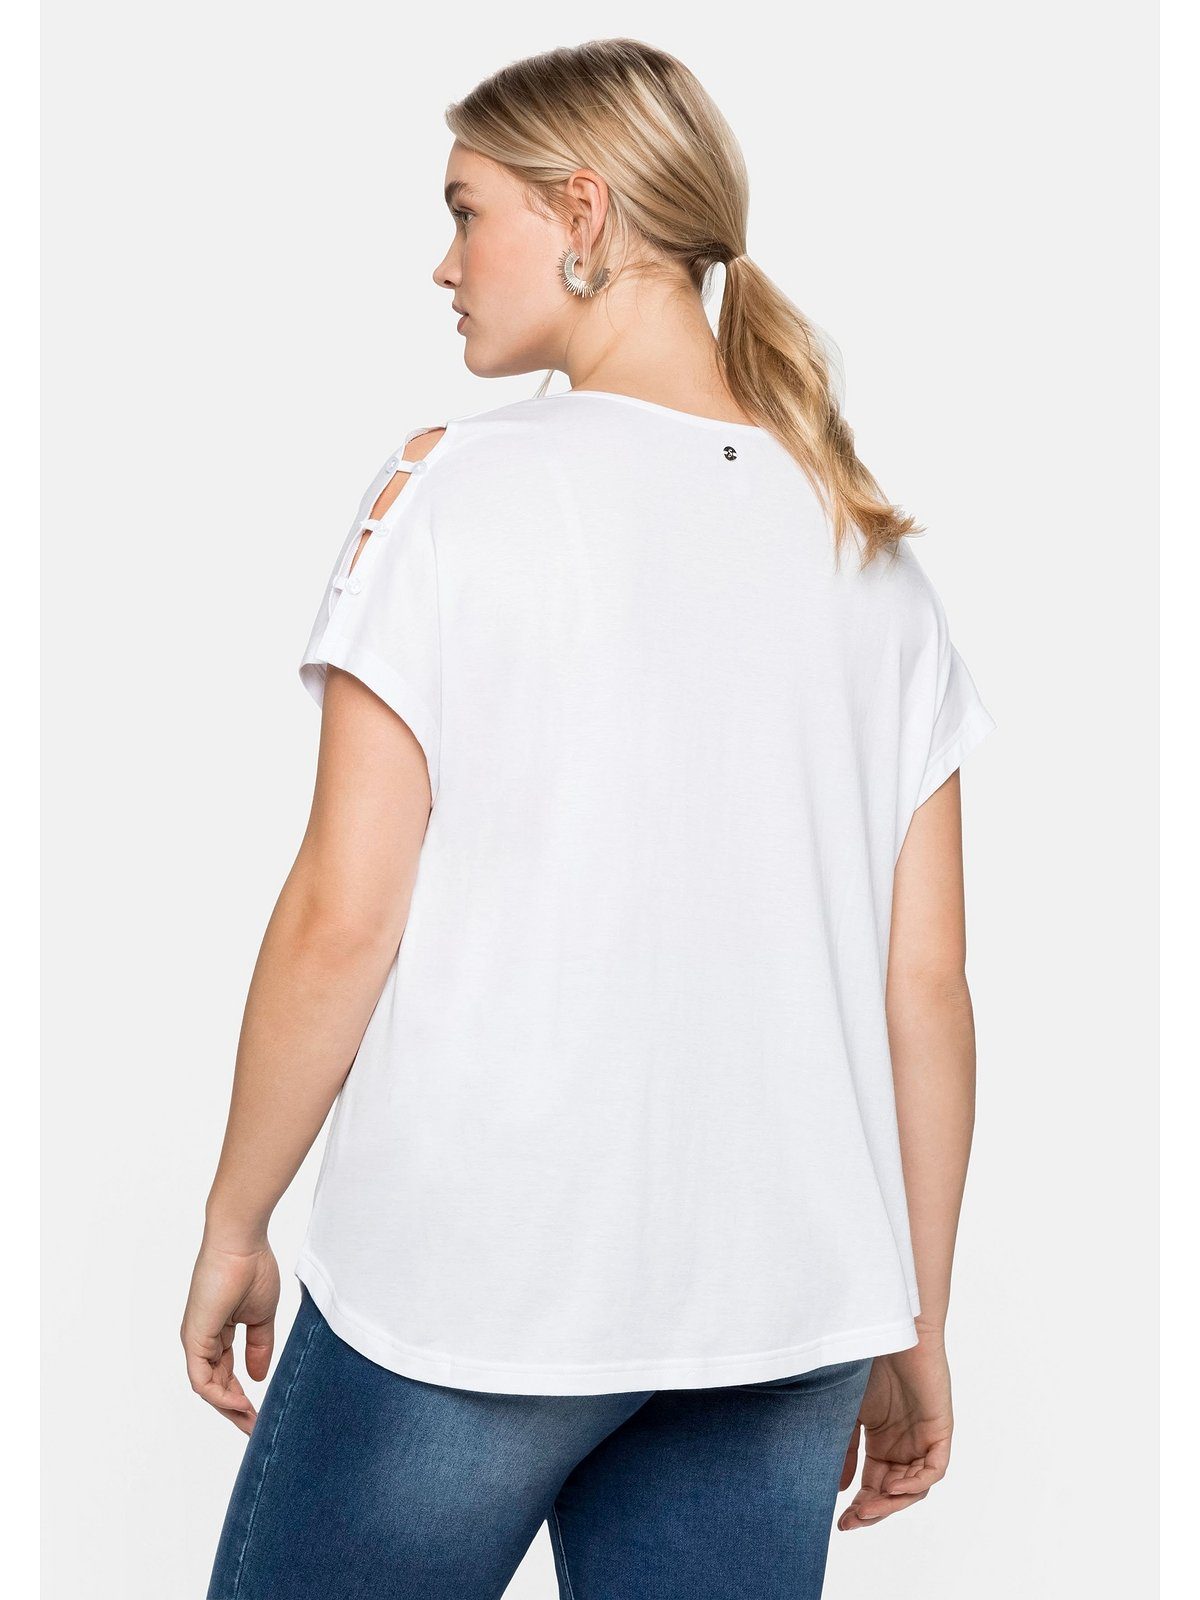 Große in A-Linie T-Shirt Schulterpartie, Sheego mit leichter weiß Größen offener